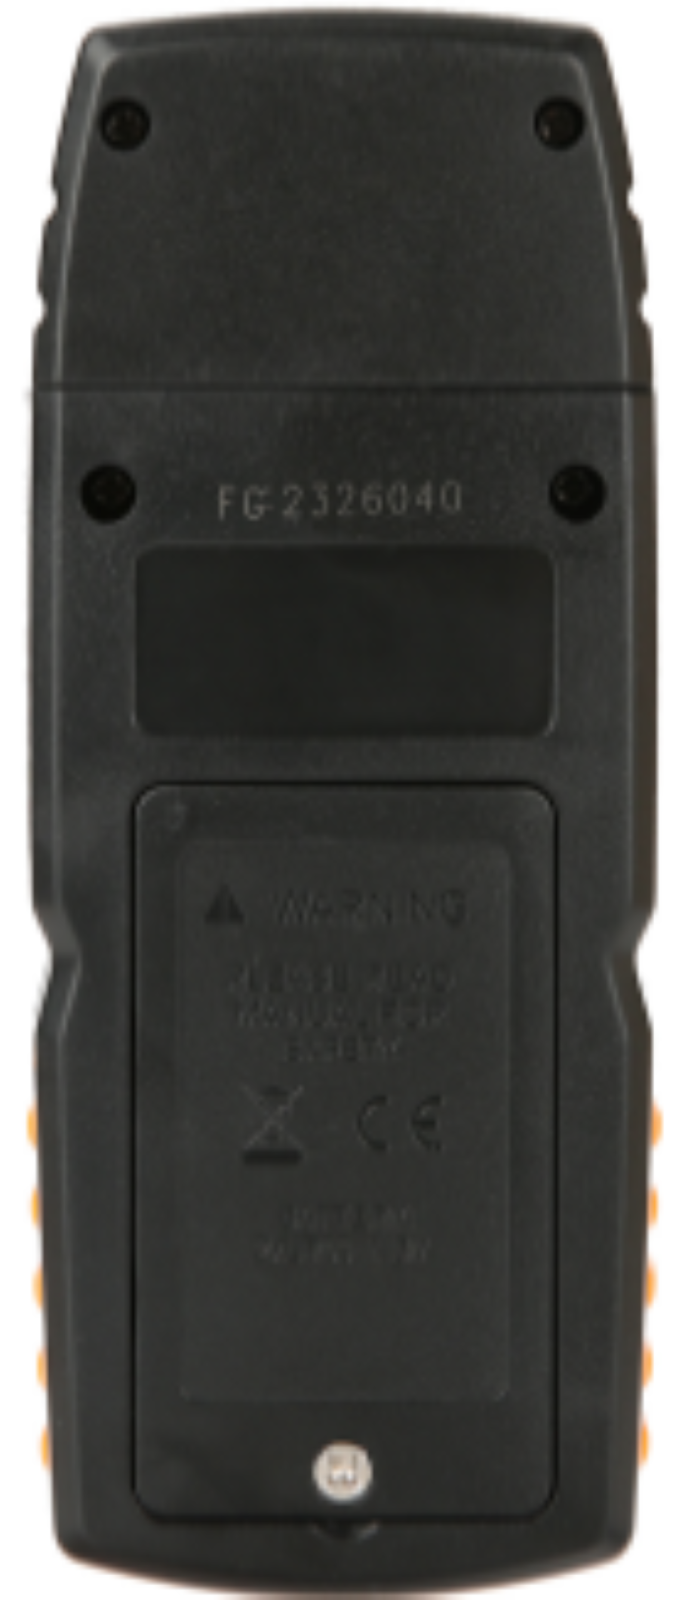 Carbon Monoxide Meter Detector Detects Dangerous Gas with Alarm Benetech GM8805